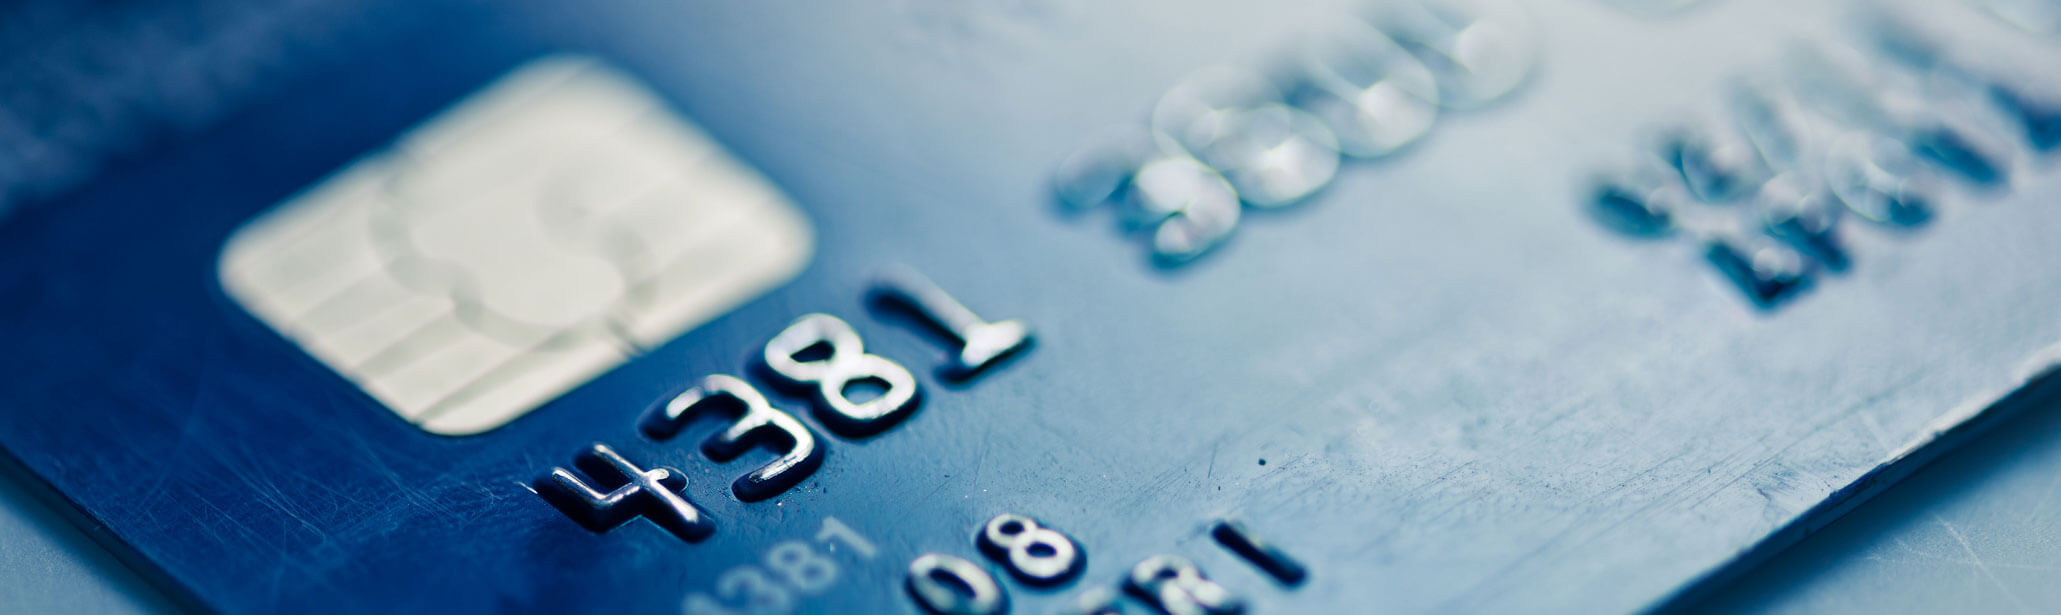 Unterschreiben der Kredit- und Bankkarte: Worauf muss ich achten?